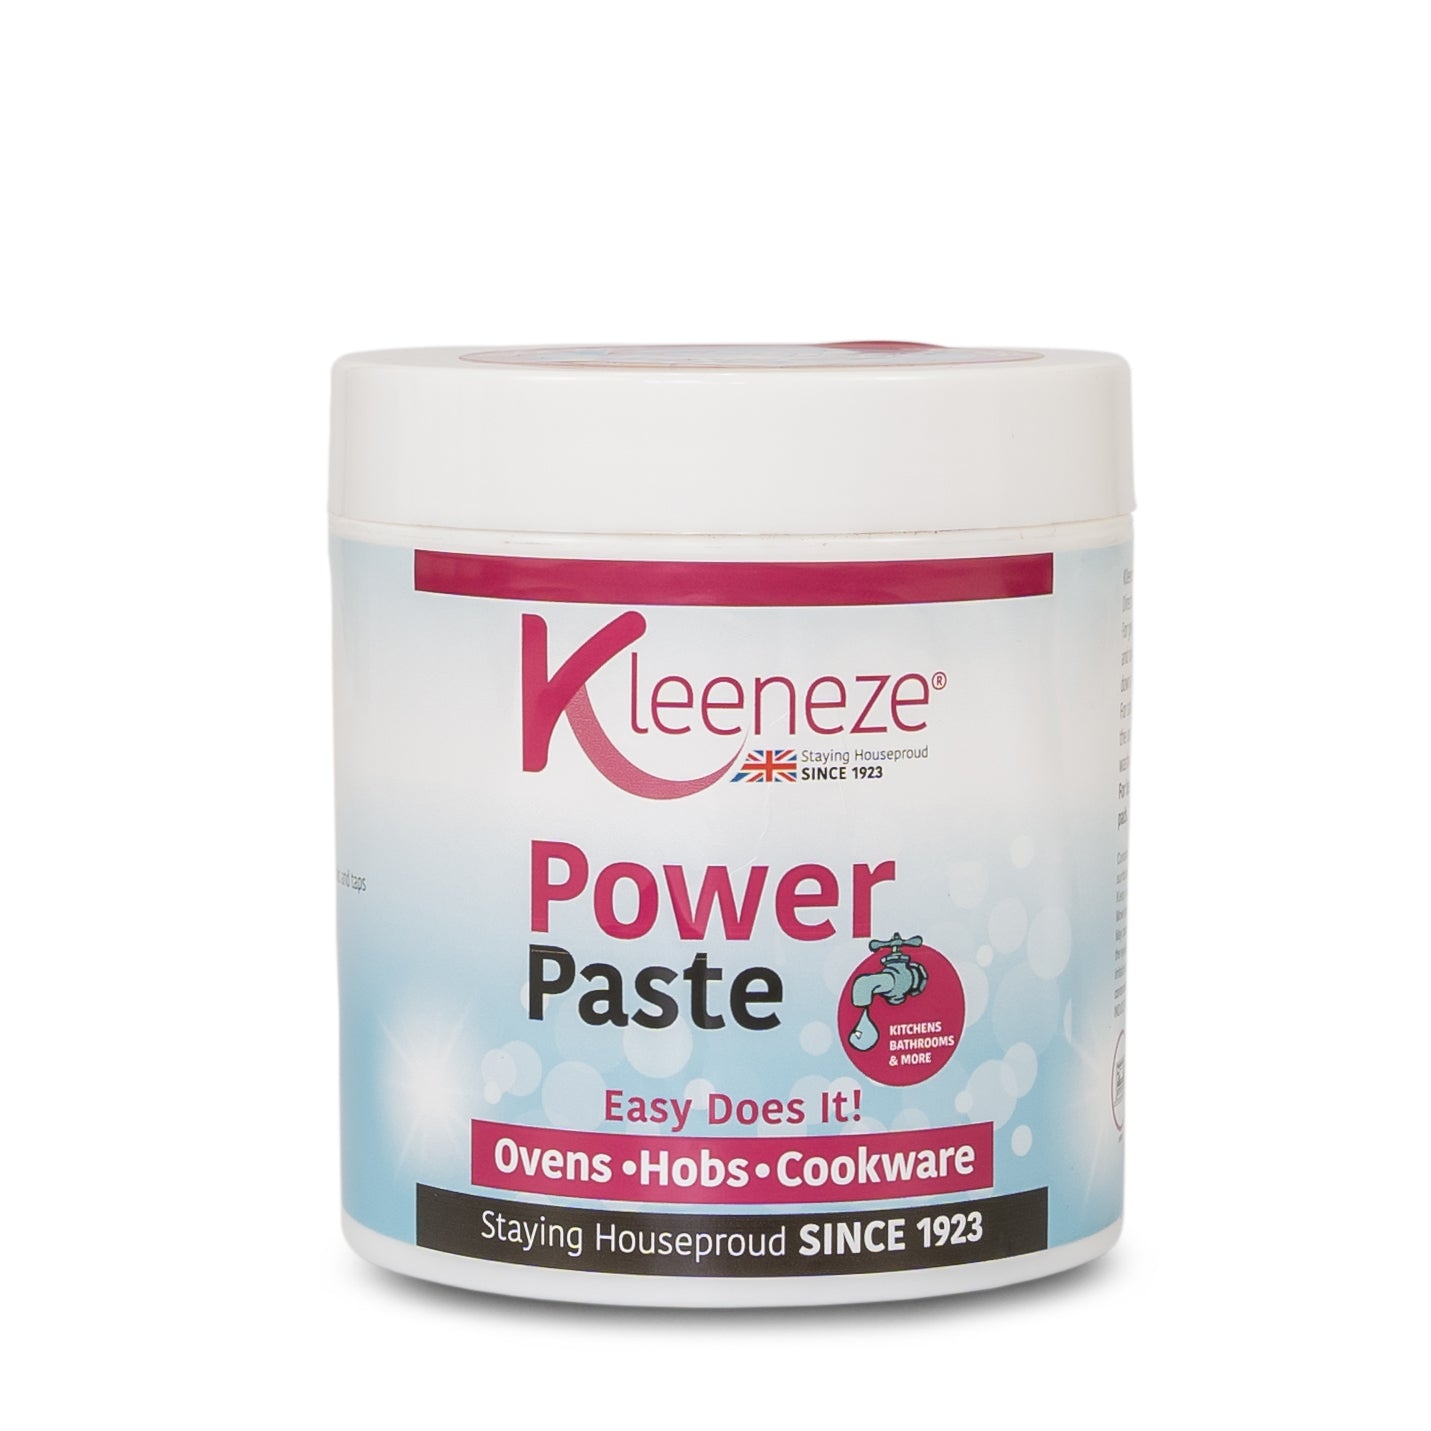 Kleeneze - Power Paste - Multipurpose Cleaning Paste- 350g - Non-hazardous Household Cleaner